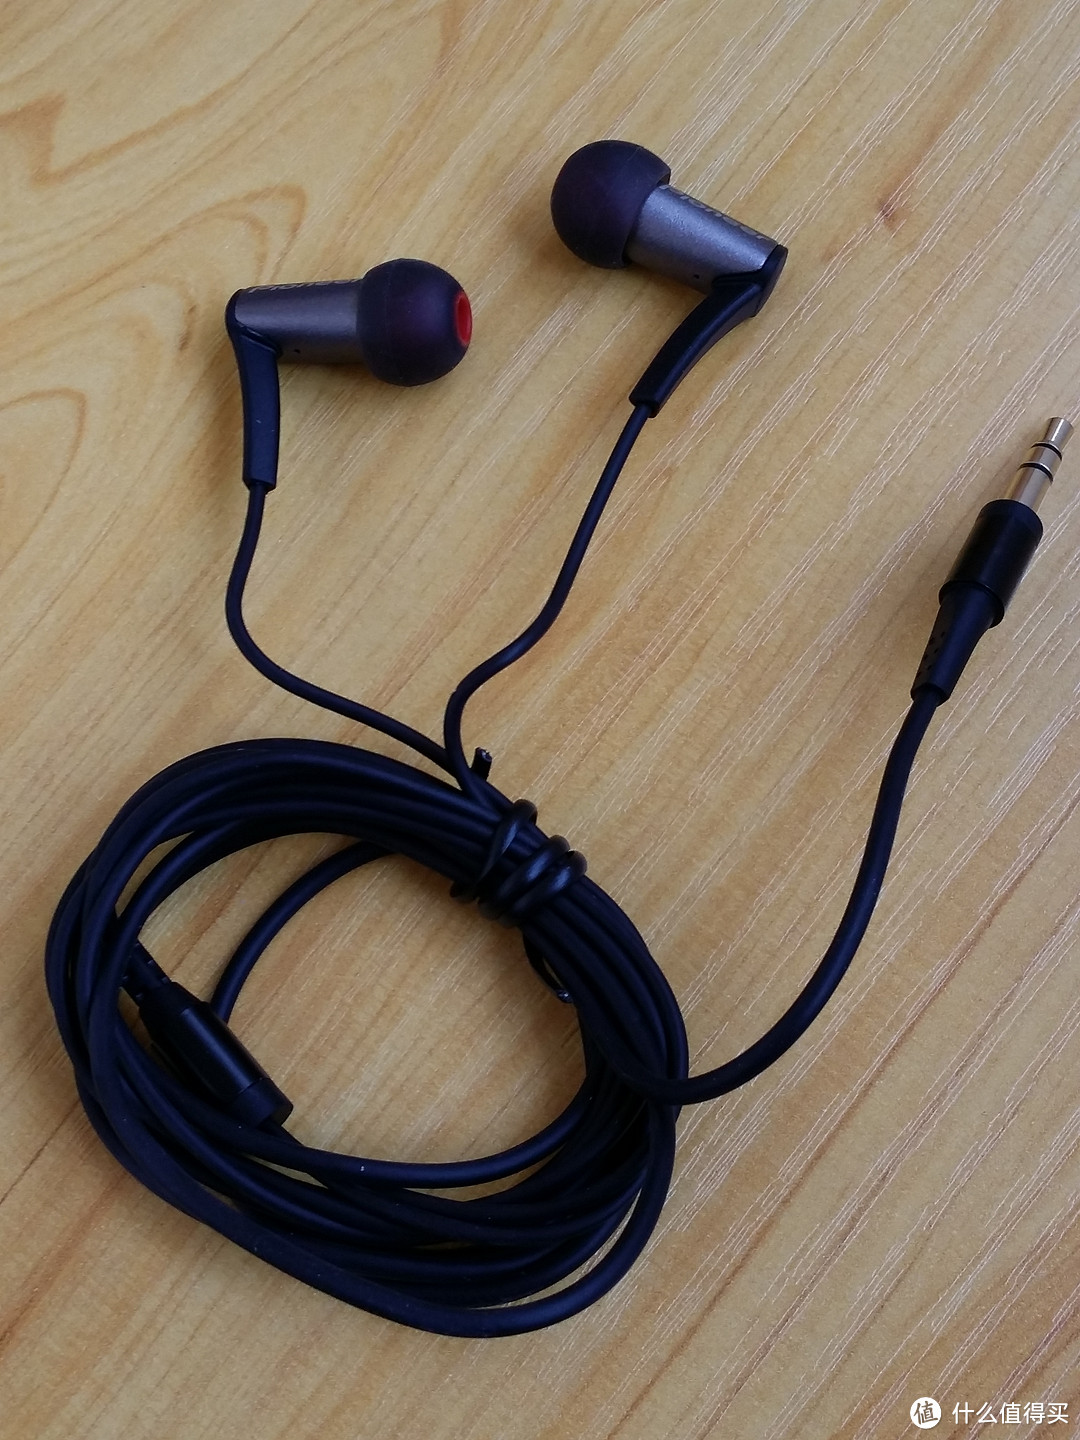 入耳好物，清晰听感——先锋 SE-CLM10 微动圈HIFI耳机测评